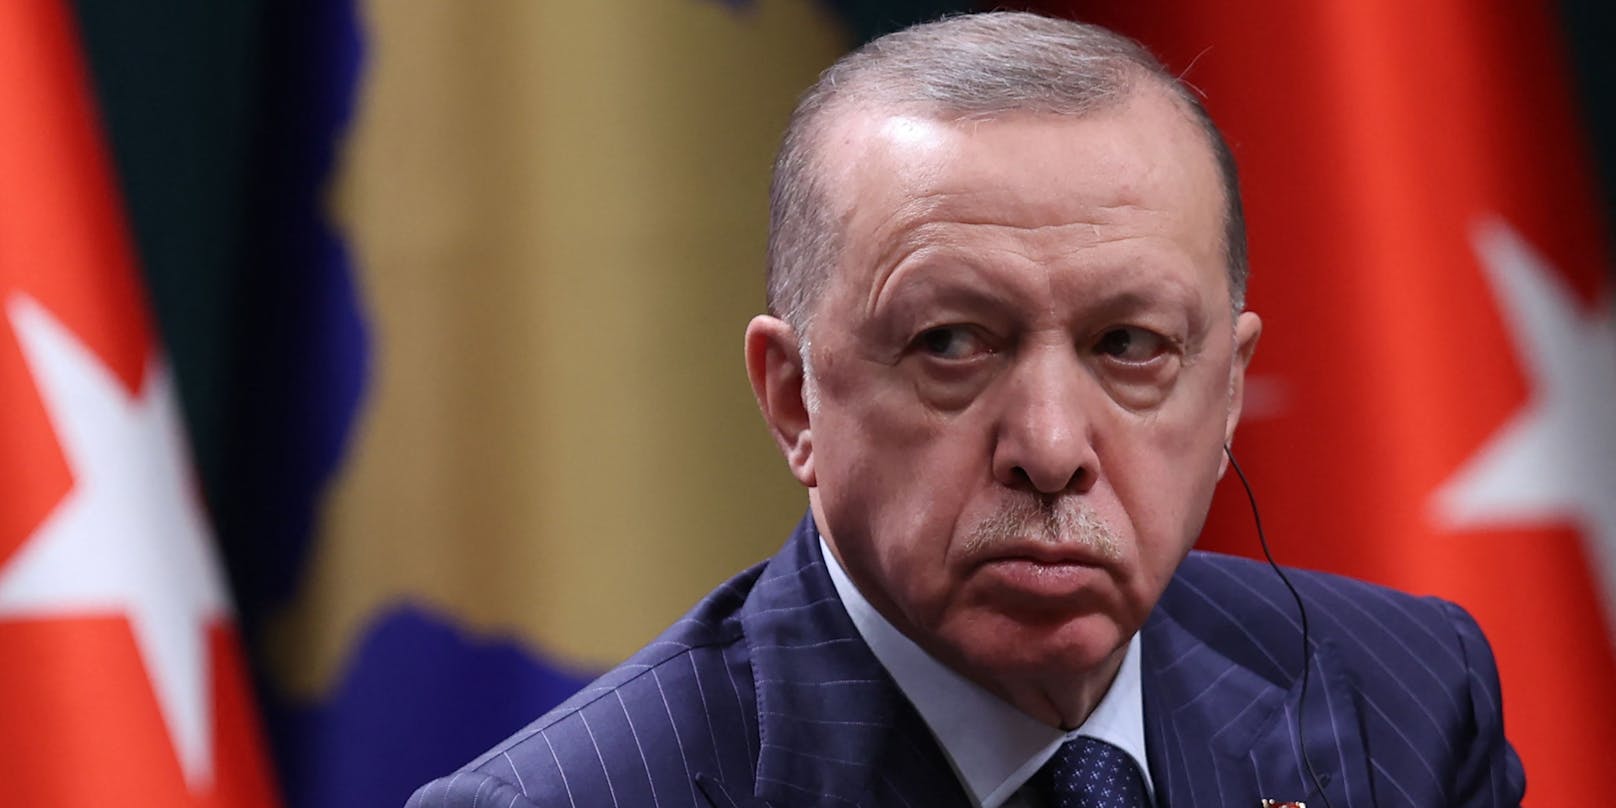 Mit dem türkischen Präsidenten ist nicht gut Kirschen essen: Weil eine Journalistin ein kritisches Sprichtwort zitiert hat, lässt sie Erdogan zwei Jahre ins Gefängnis sperren.